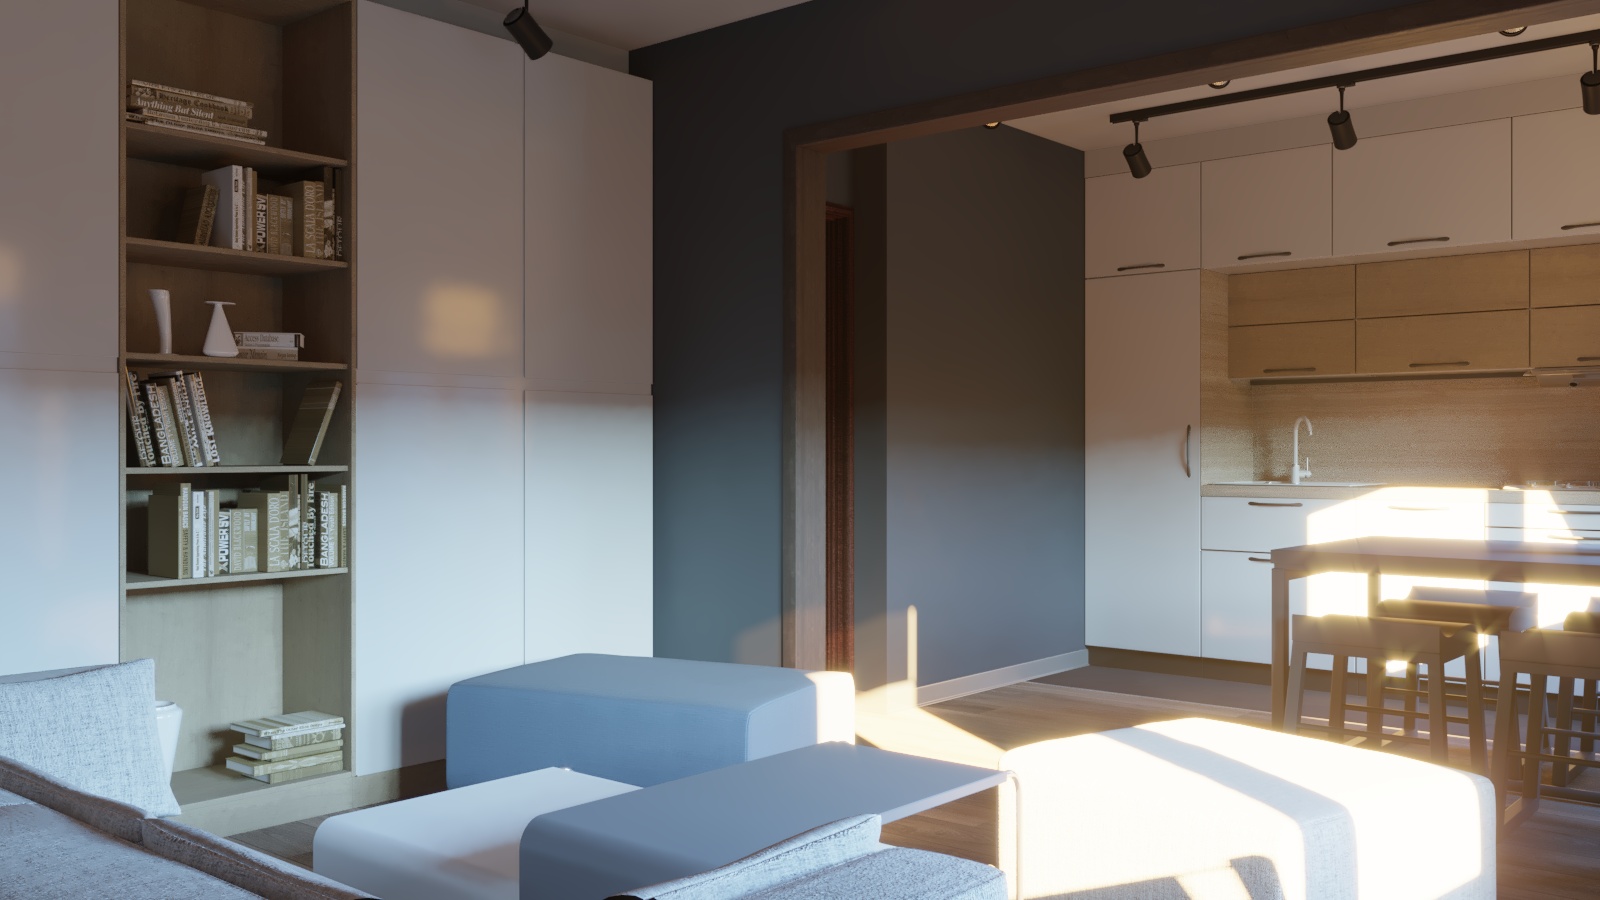 Küçük bir oturma odasına sahip mutfak in 3d max corona render resim